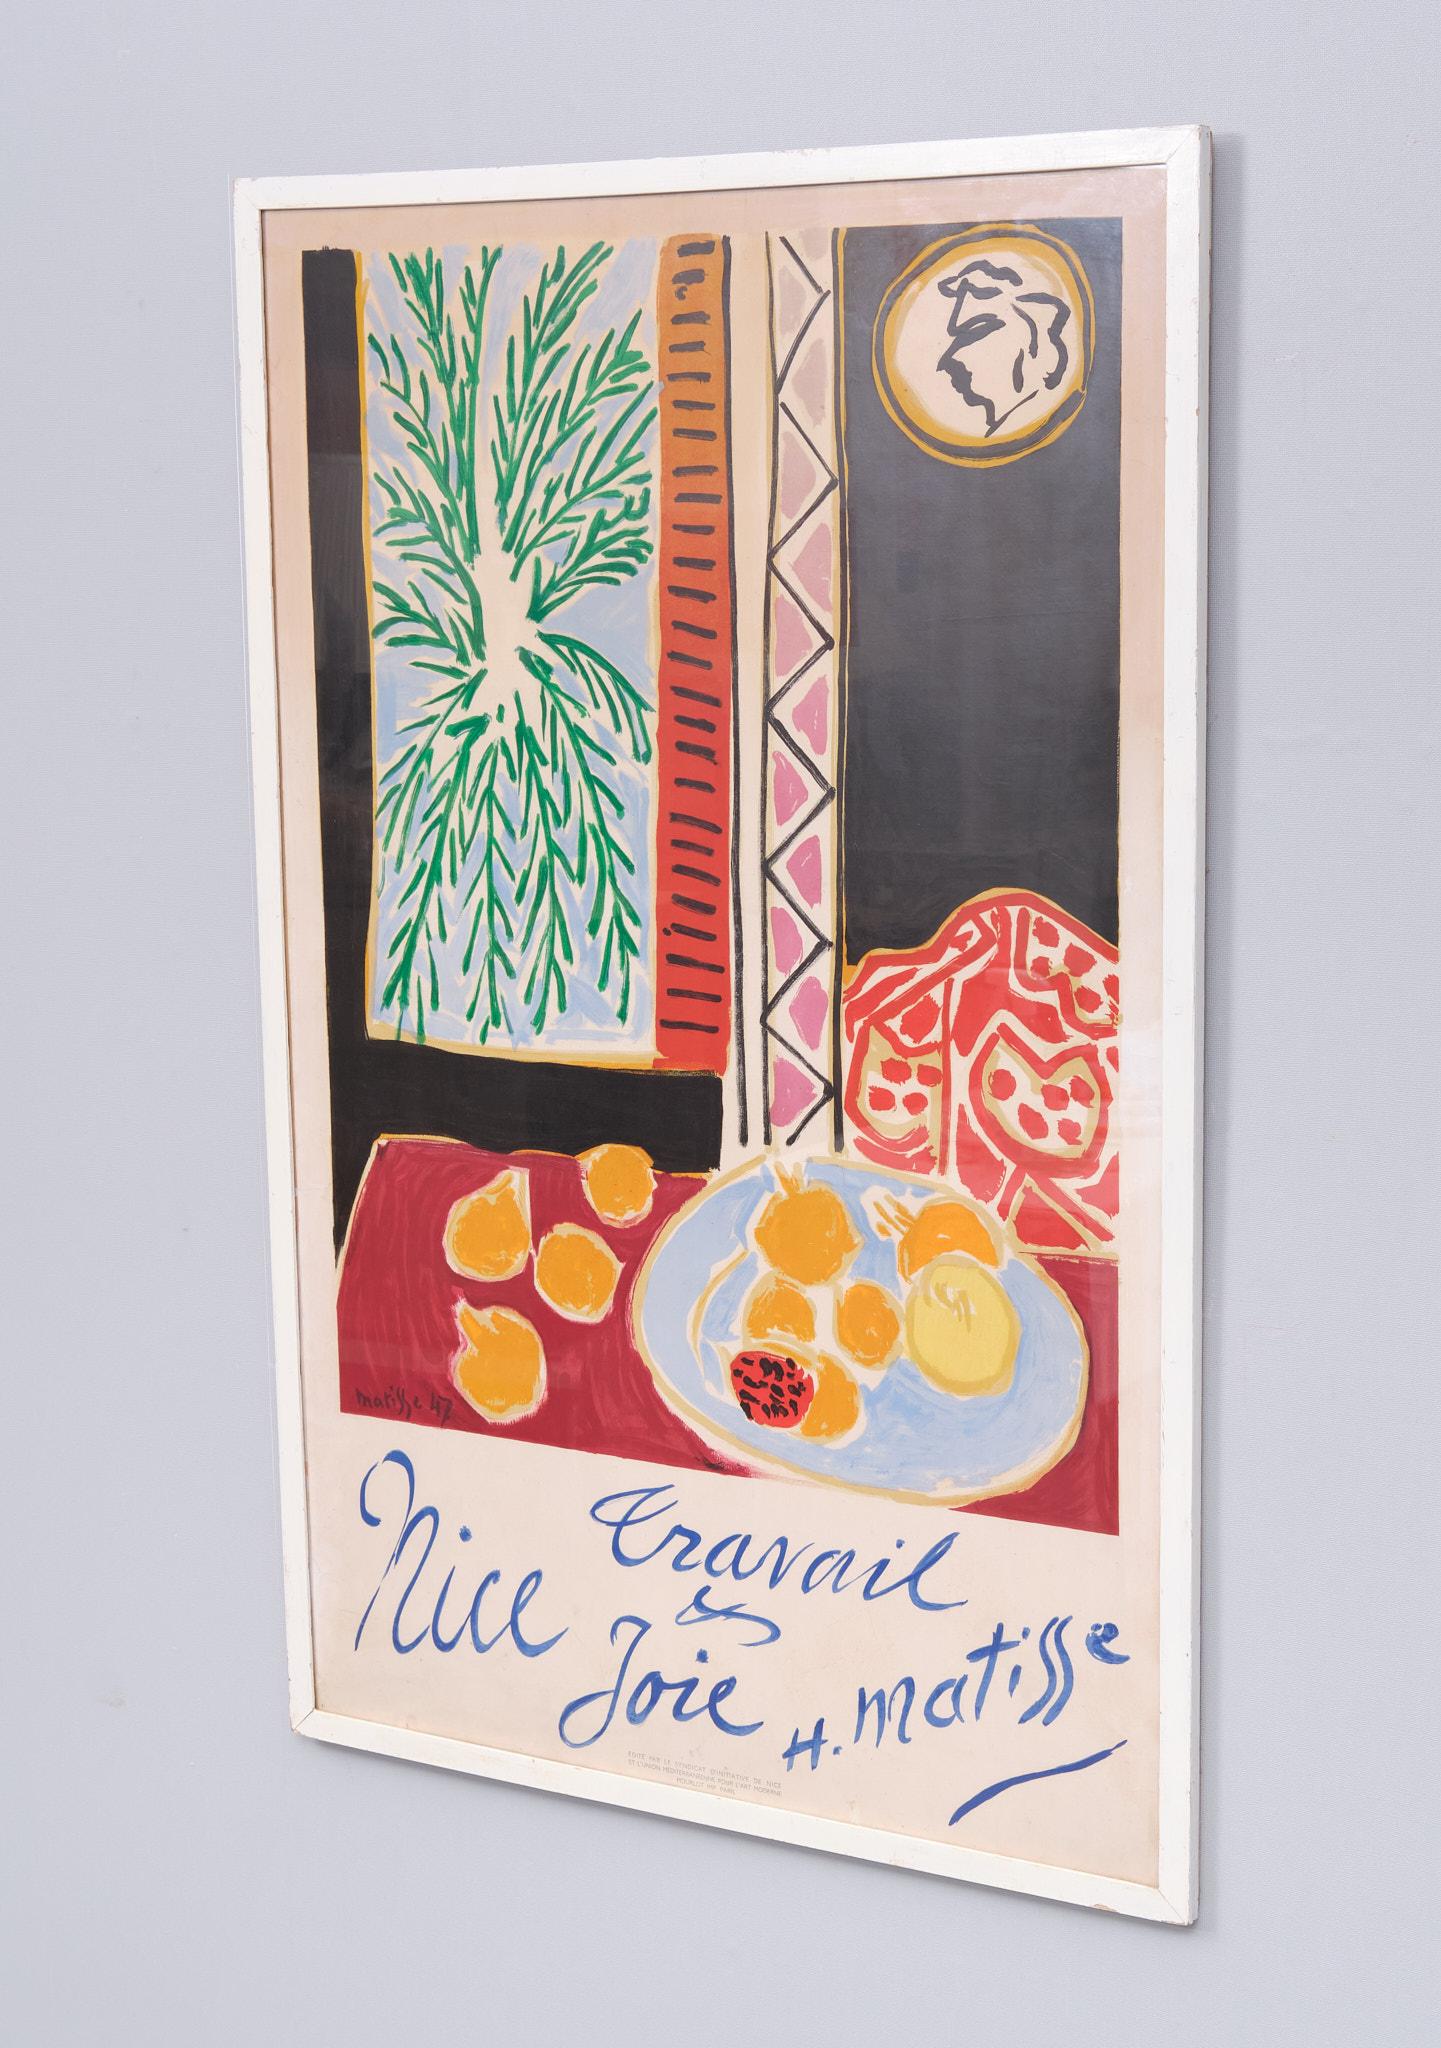 Nice Travail et Joie est une affiche de voyage française de 1947 réalisée par l'artiste Henri Matisse. Cette affiche de voyage a été créée exclusivement pour la ville de Nice, où Matisse s'est installé vers la fin de sa vie. L'affiche s'intitule 